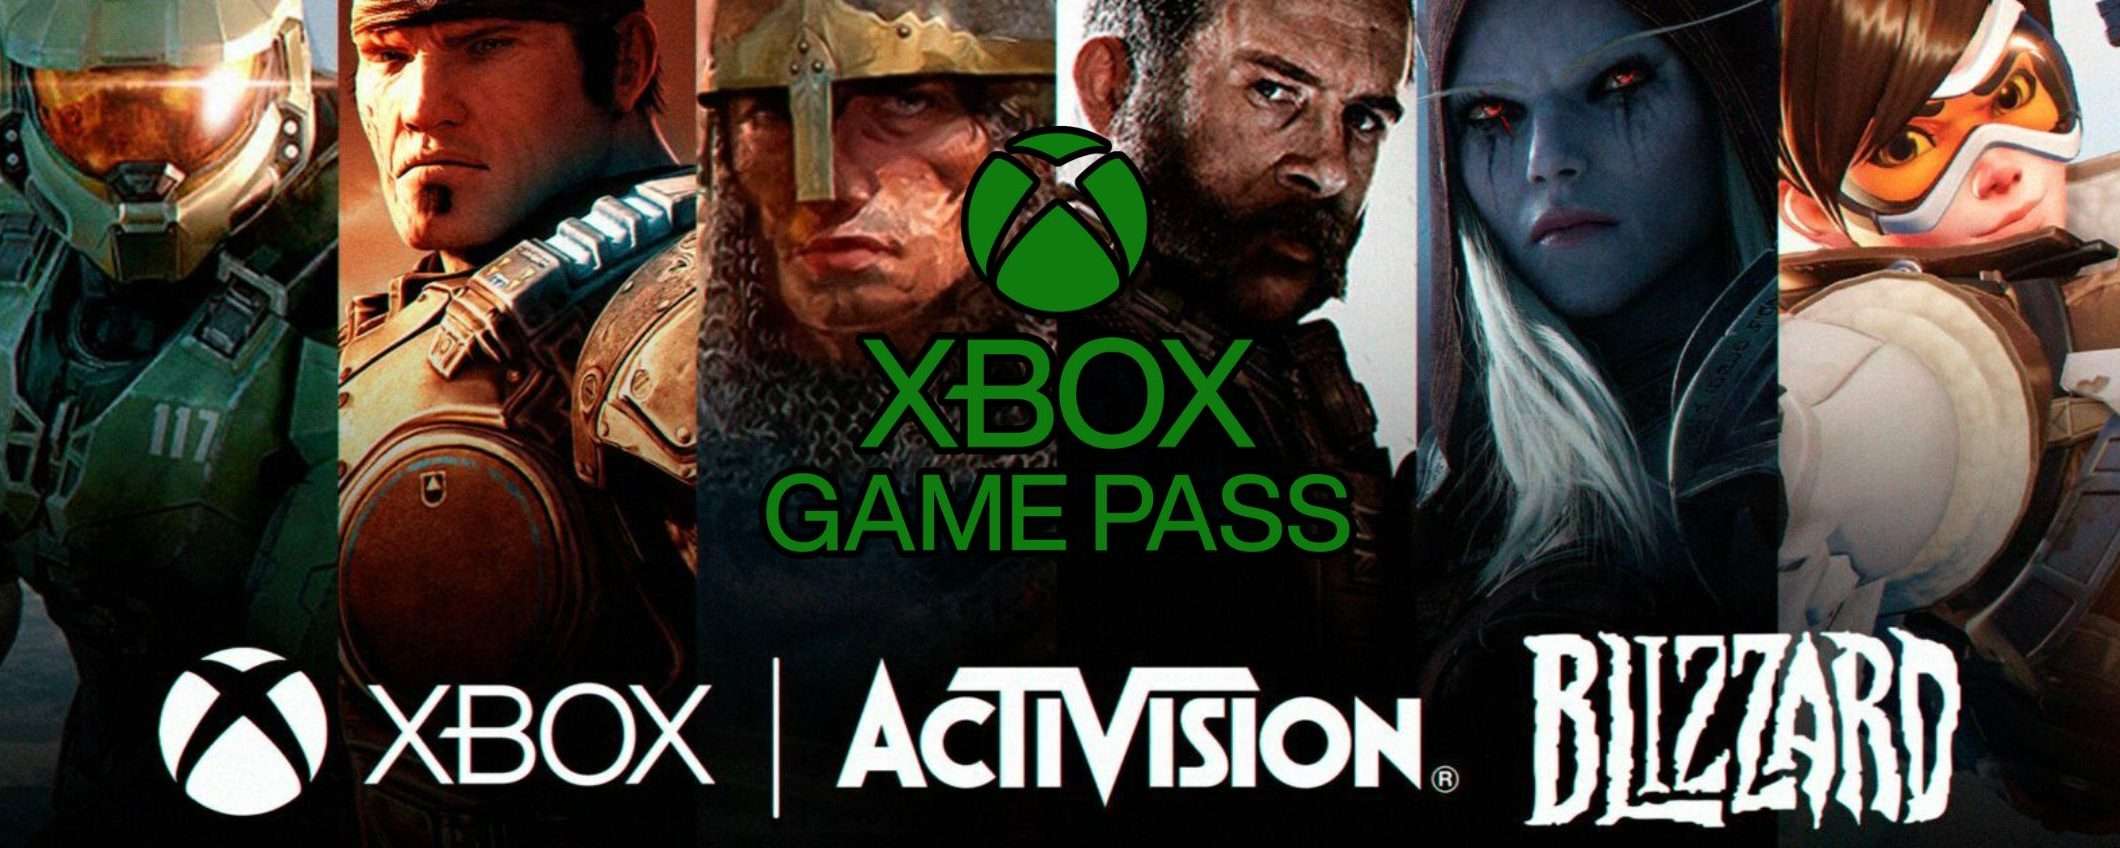 Giochi Activision gratis su Xbox Game Pass: c'è una data